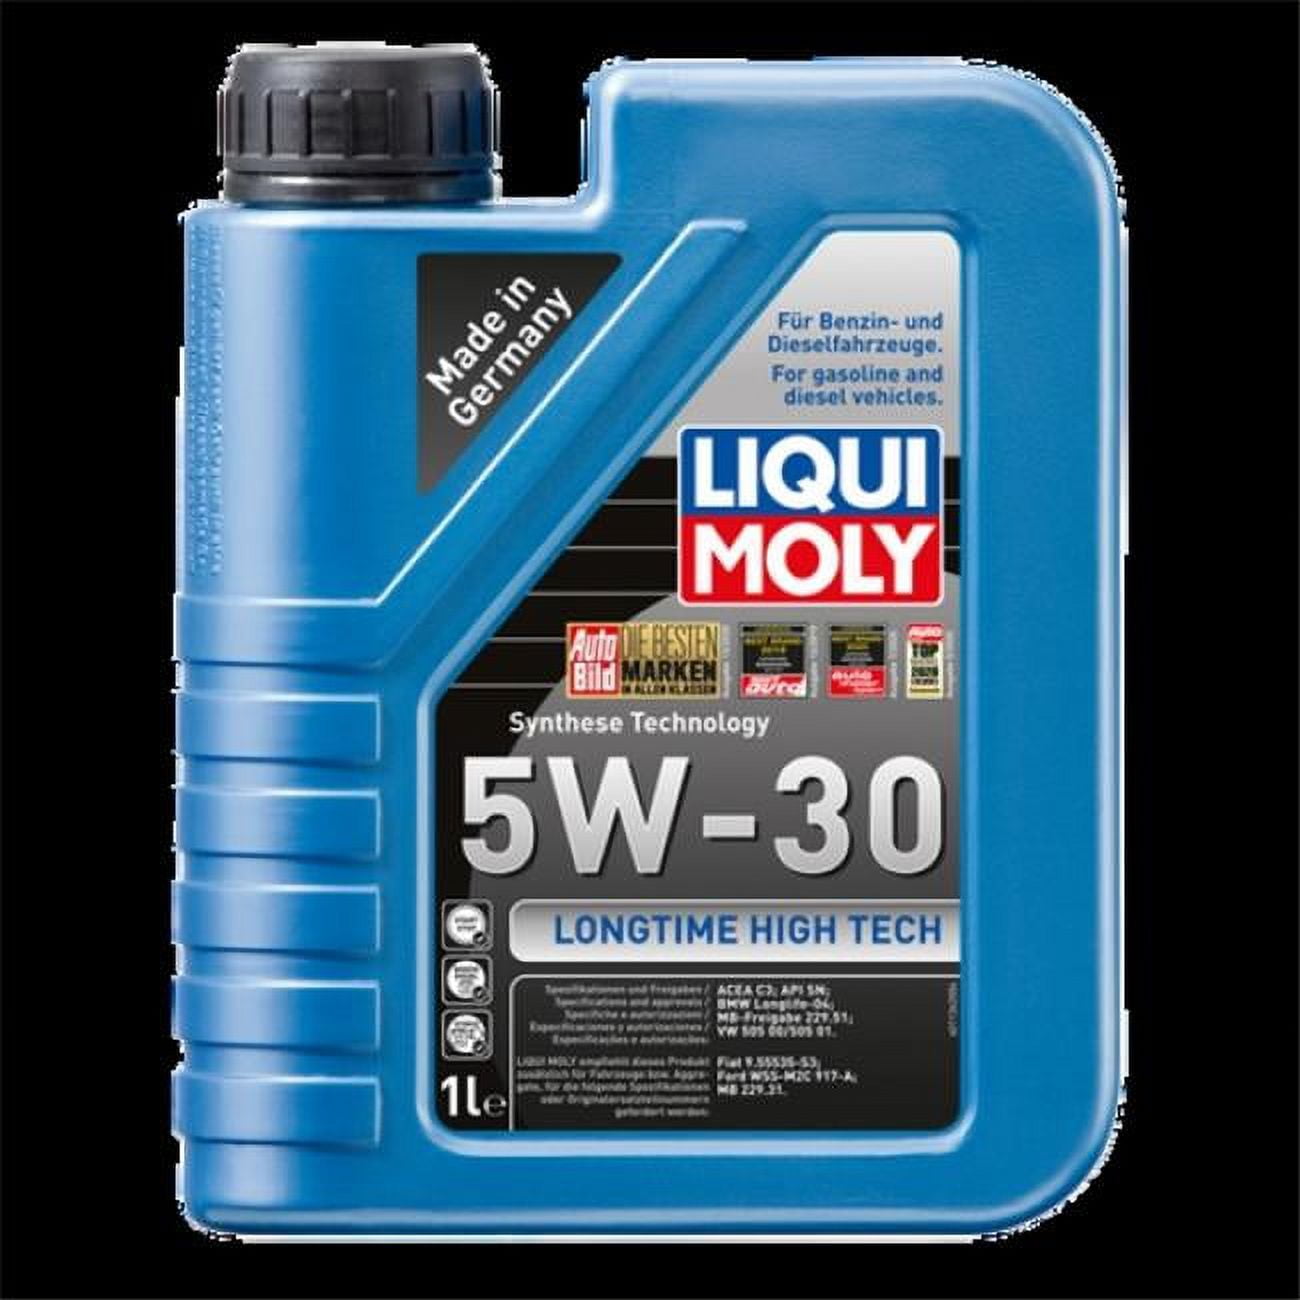 Liqui Moly 5w30 Molygen 4l, For Automotive, Can Of 3.5 Litre at Rs